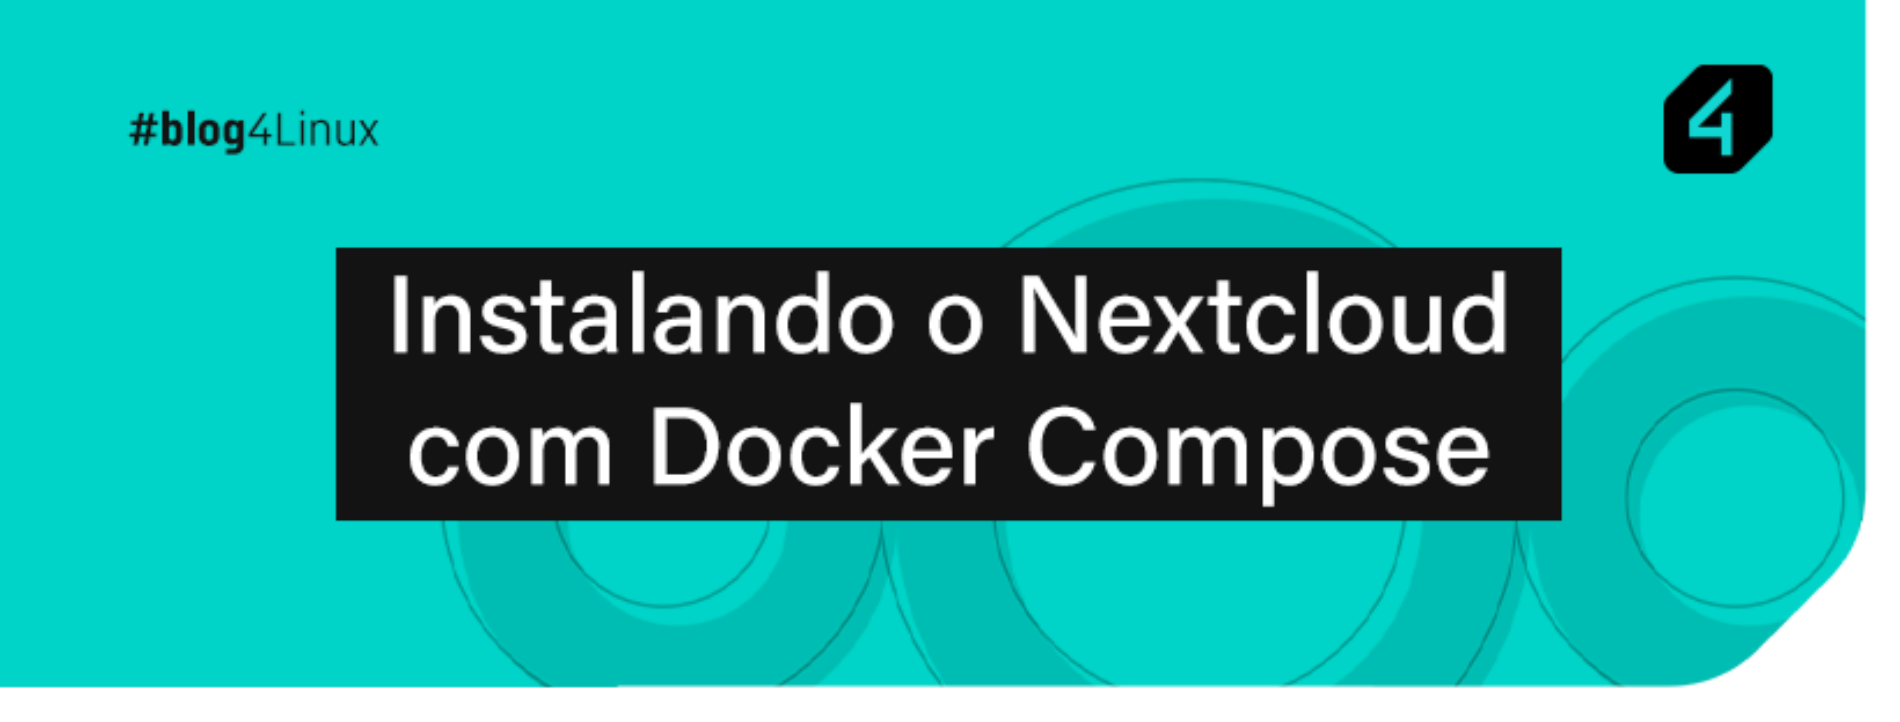 Instalando o Nextcloud com Docker Compose